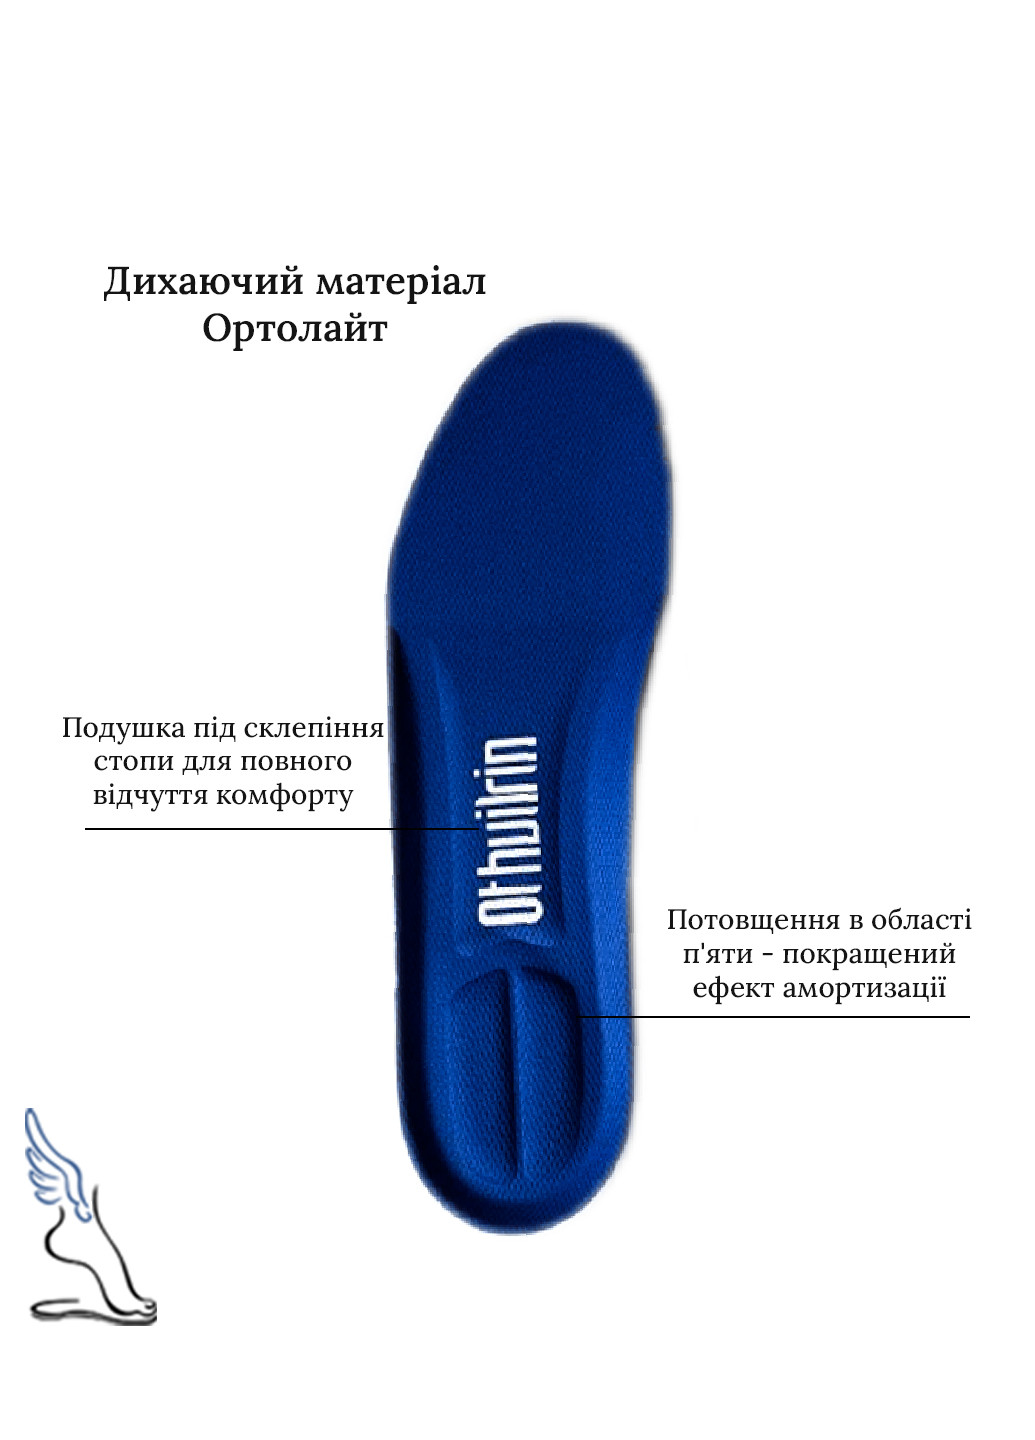 Спортивні амортизаційні устілки для взуття Ortholite No Brand (257560302)